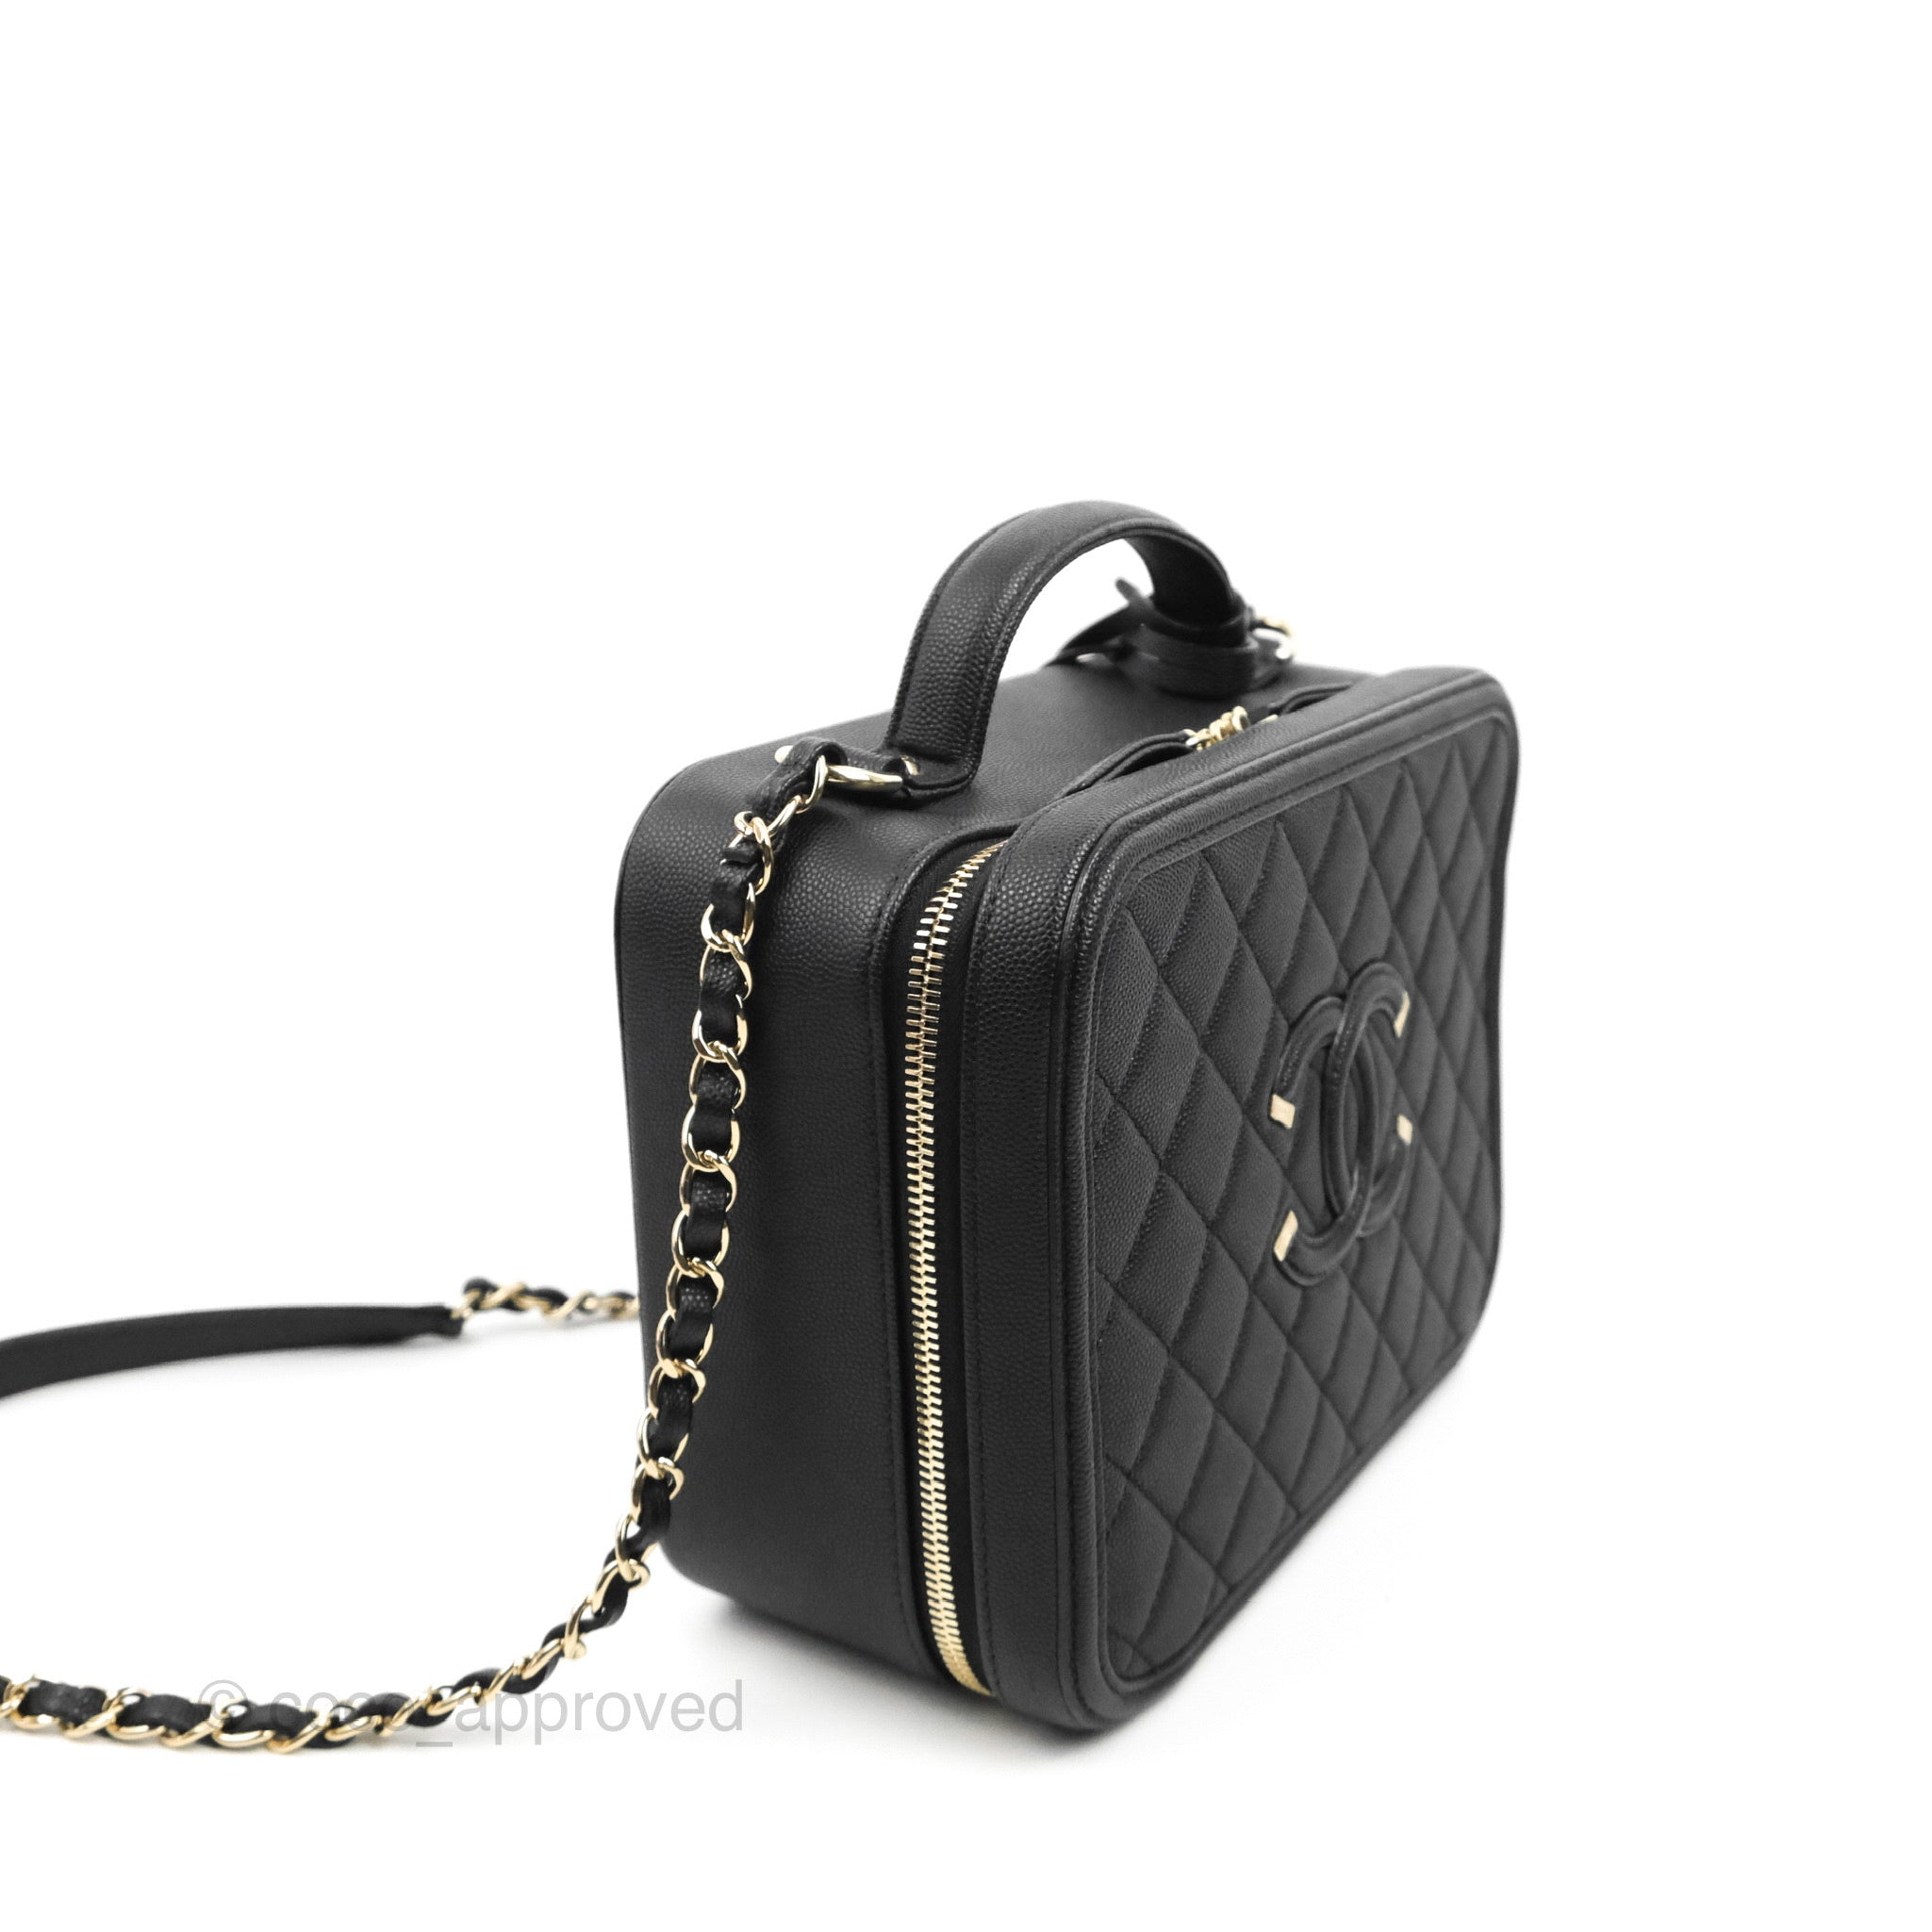 Chanel Vintage Vanity Case Black Caviar Gold Hardware – Coco